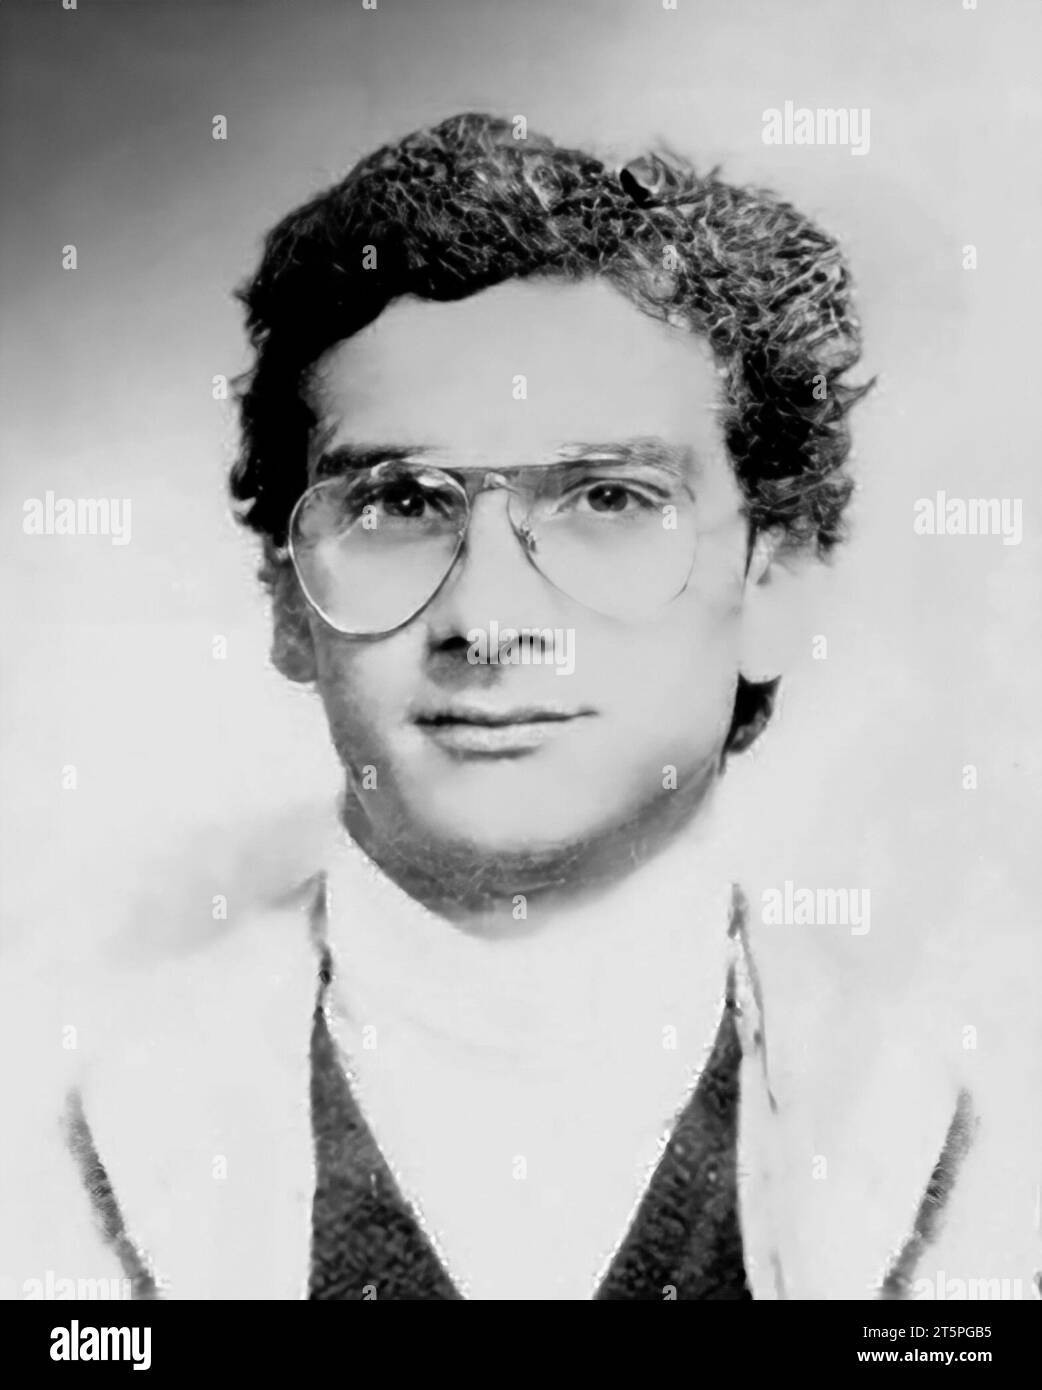 Messina Denaro. Porträt des sizilianischen Mafia-Chefs Matteo Messina Denaro (1962-2023) als junger Mann aus seinem Personalausweis (Foto restauriert und retuschiert) Stockfoto